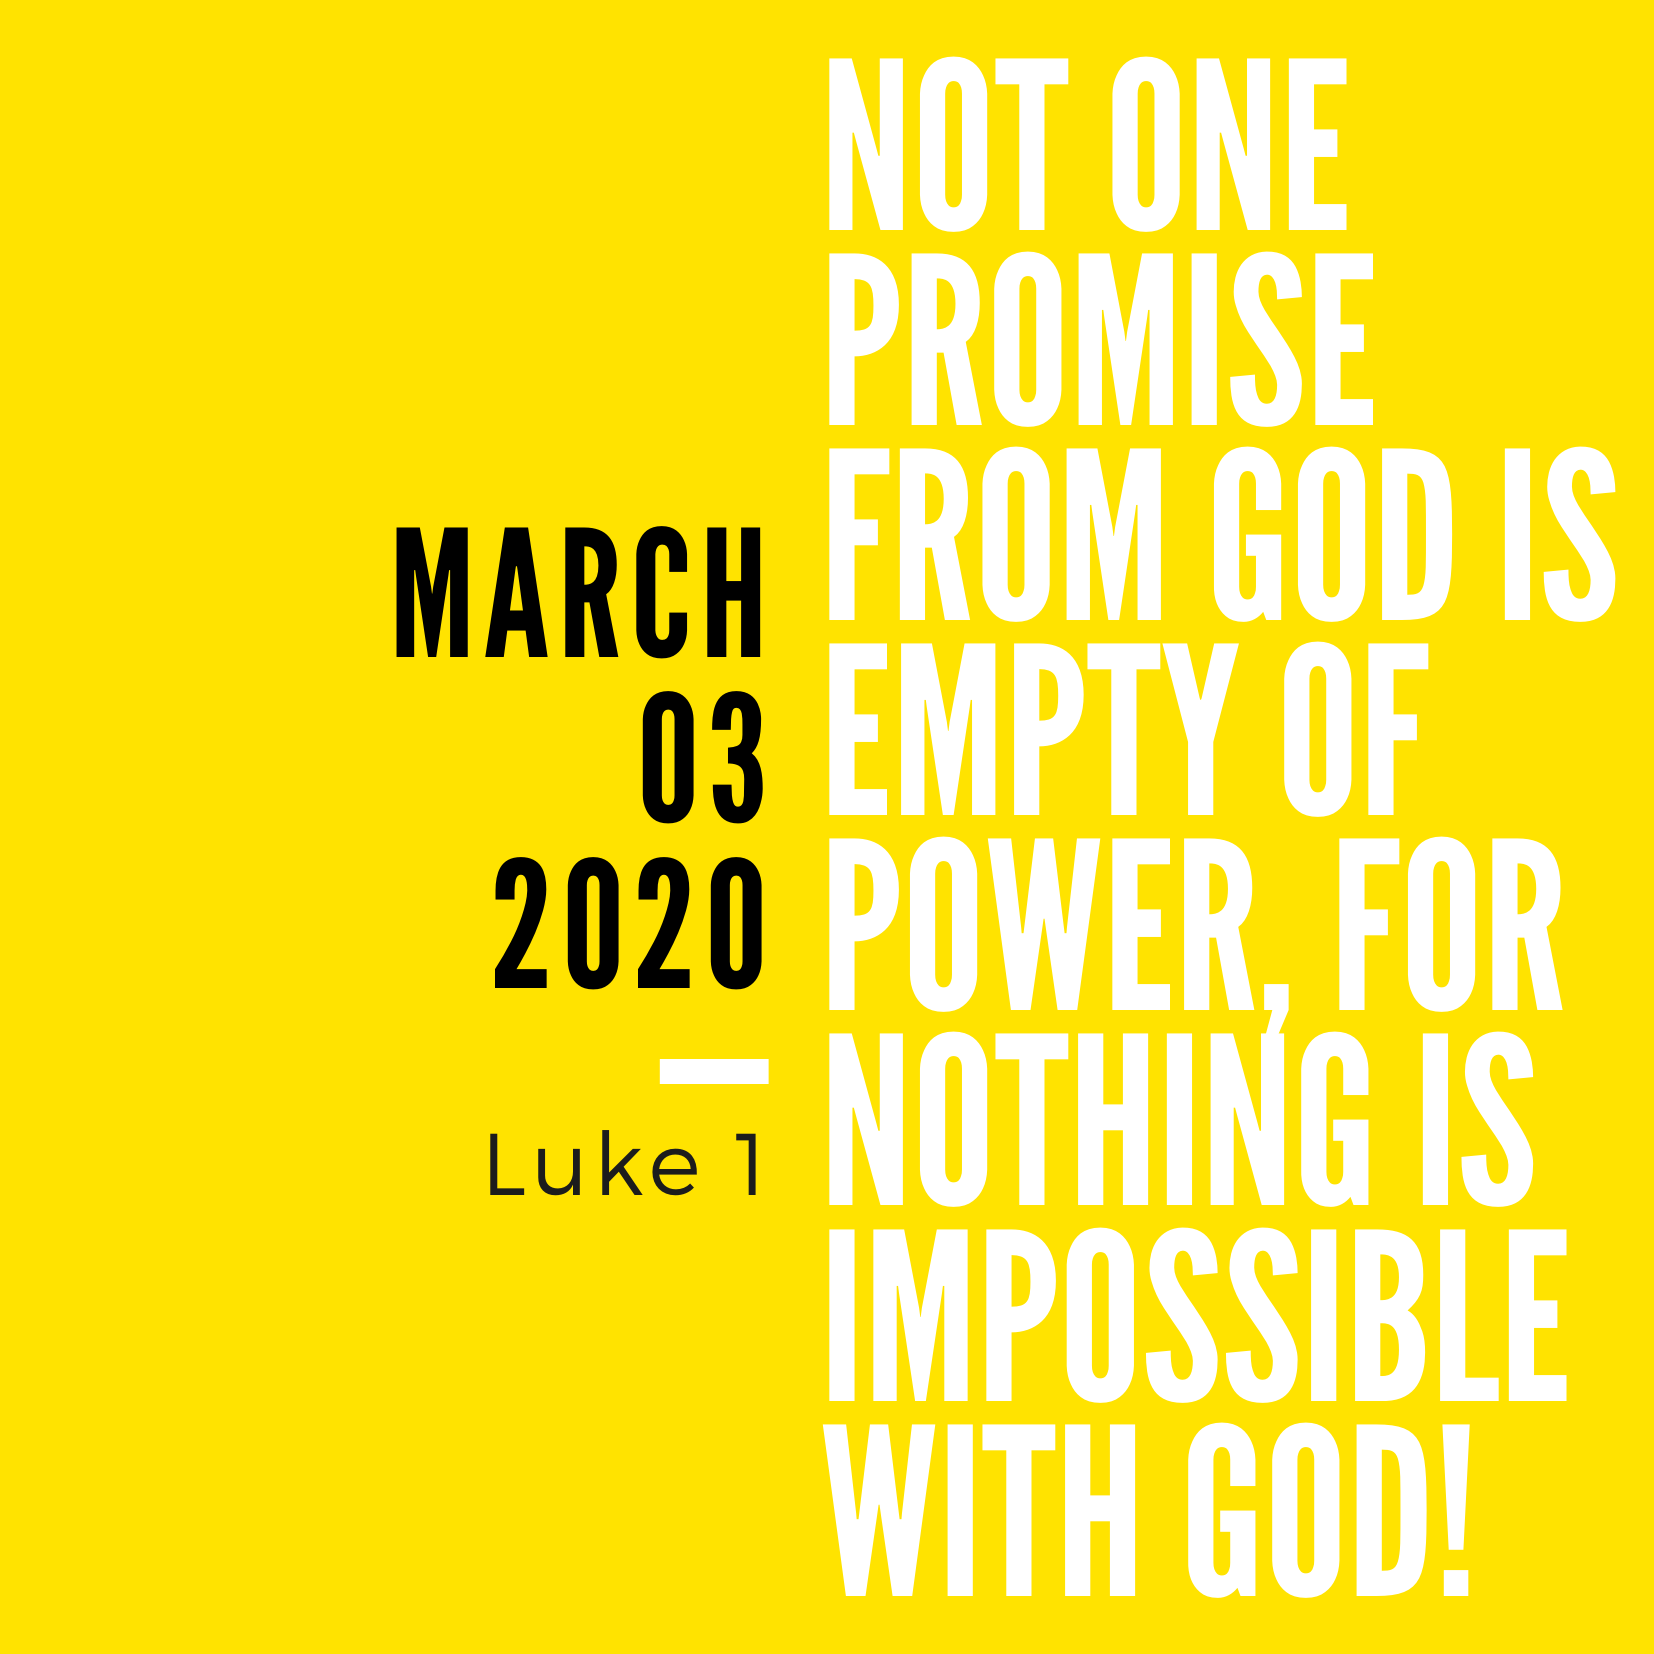 March 3: Luke 1